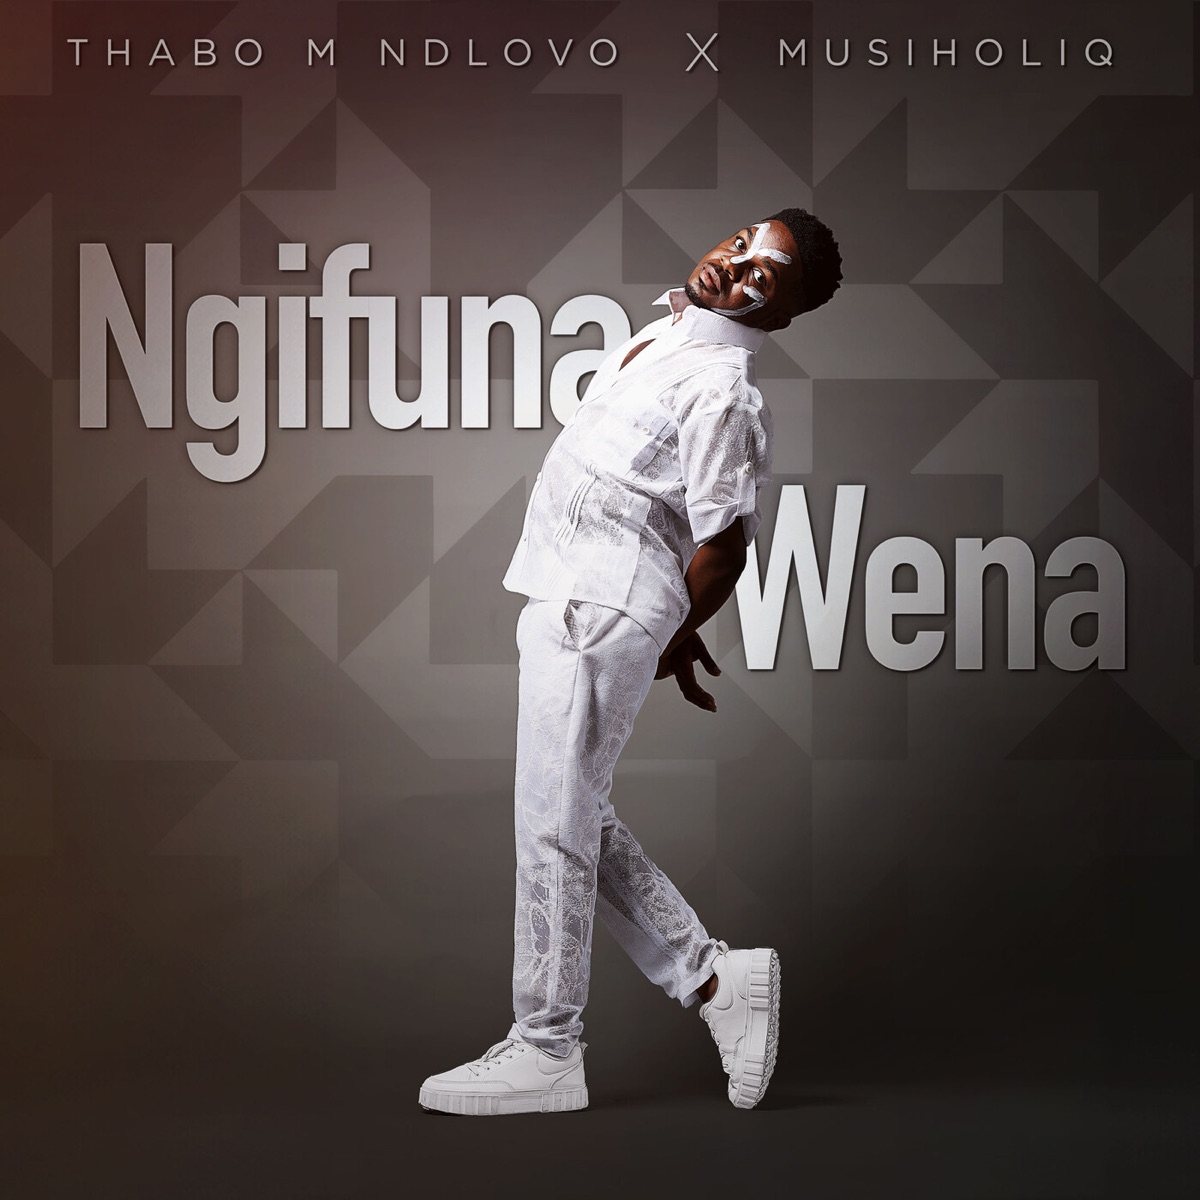 Thabo M Ndlovu &Amp; Musiholiq – Ngifuna Wena 1